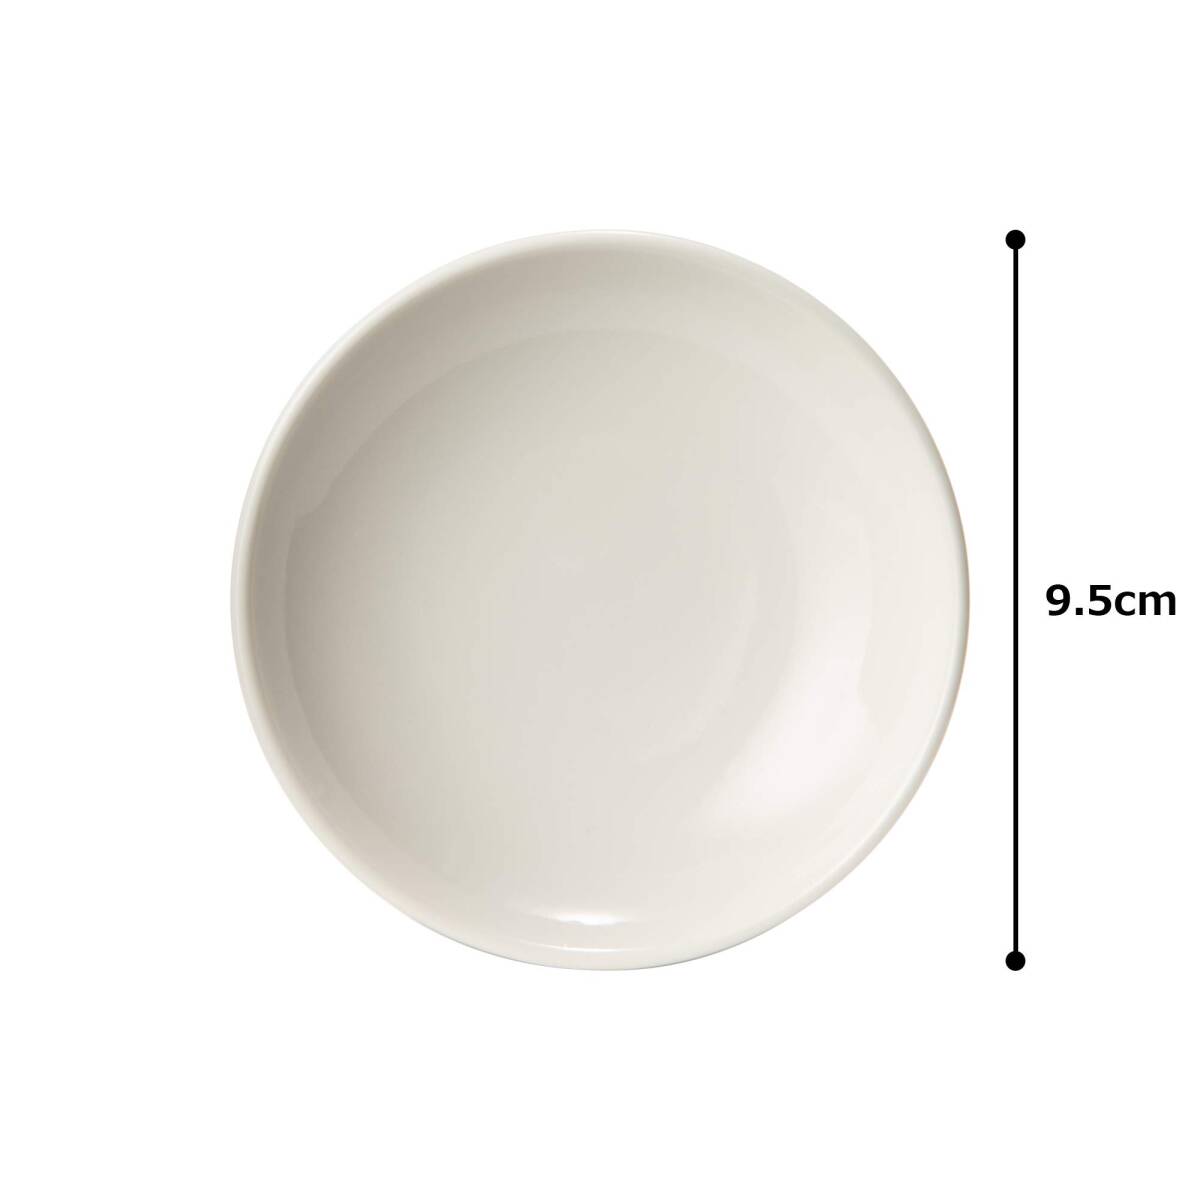 NARUMI(ナルミ) プレート 皿 パティア(PATIA) 9.5cm ホワイト シンプル かわいい 平皿 小皿 電子レンジ 食洗機対応 日本_画像7